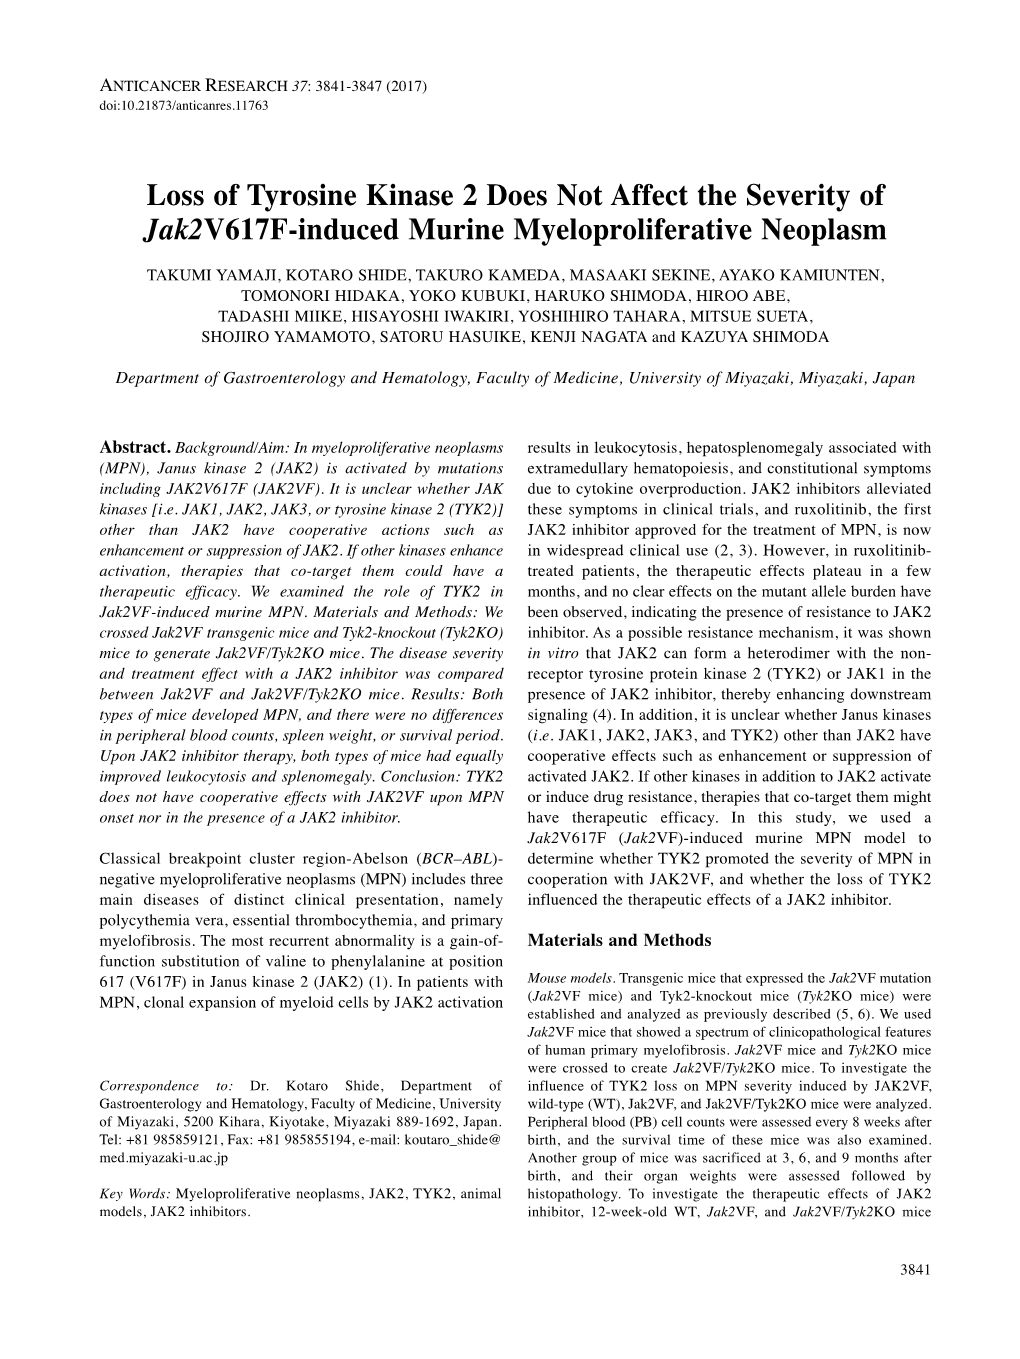 Loss of Tyrosine Kinase 2 Does Not Affect the Severity of Jak2v617f